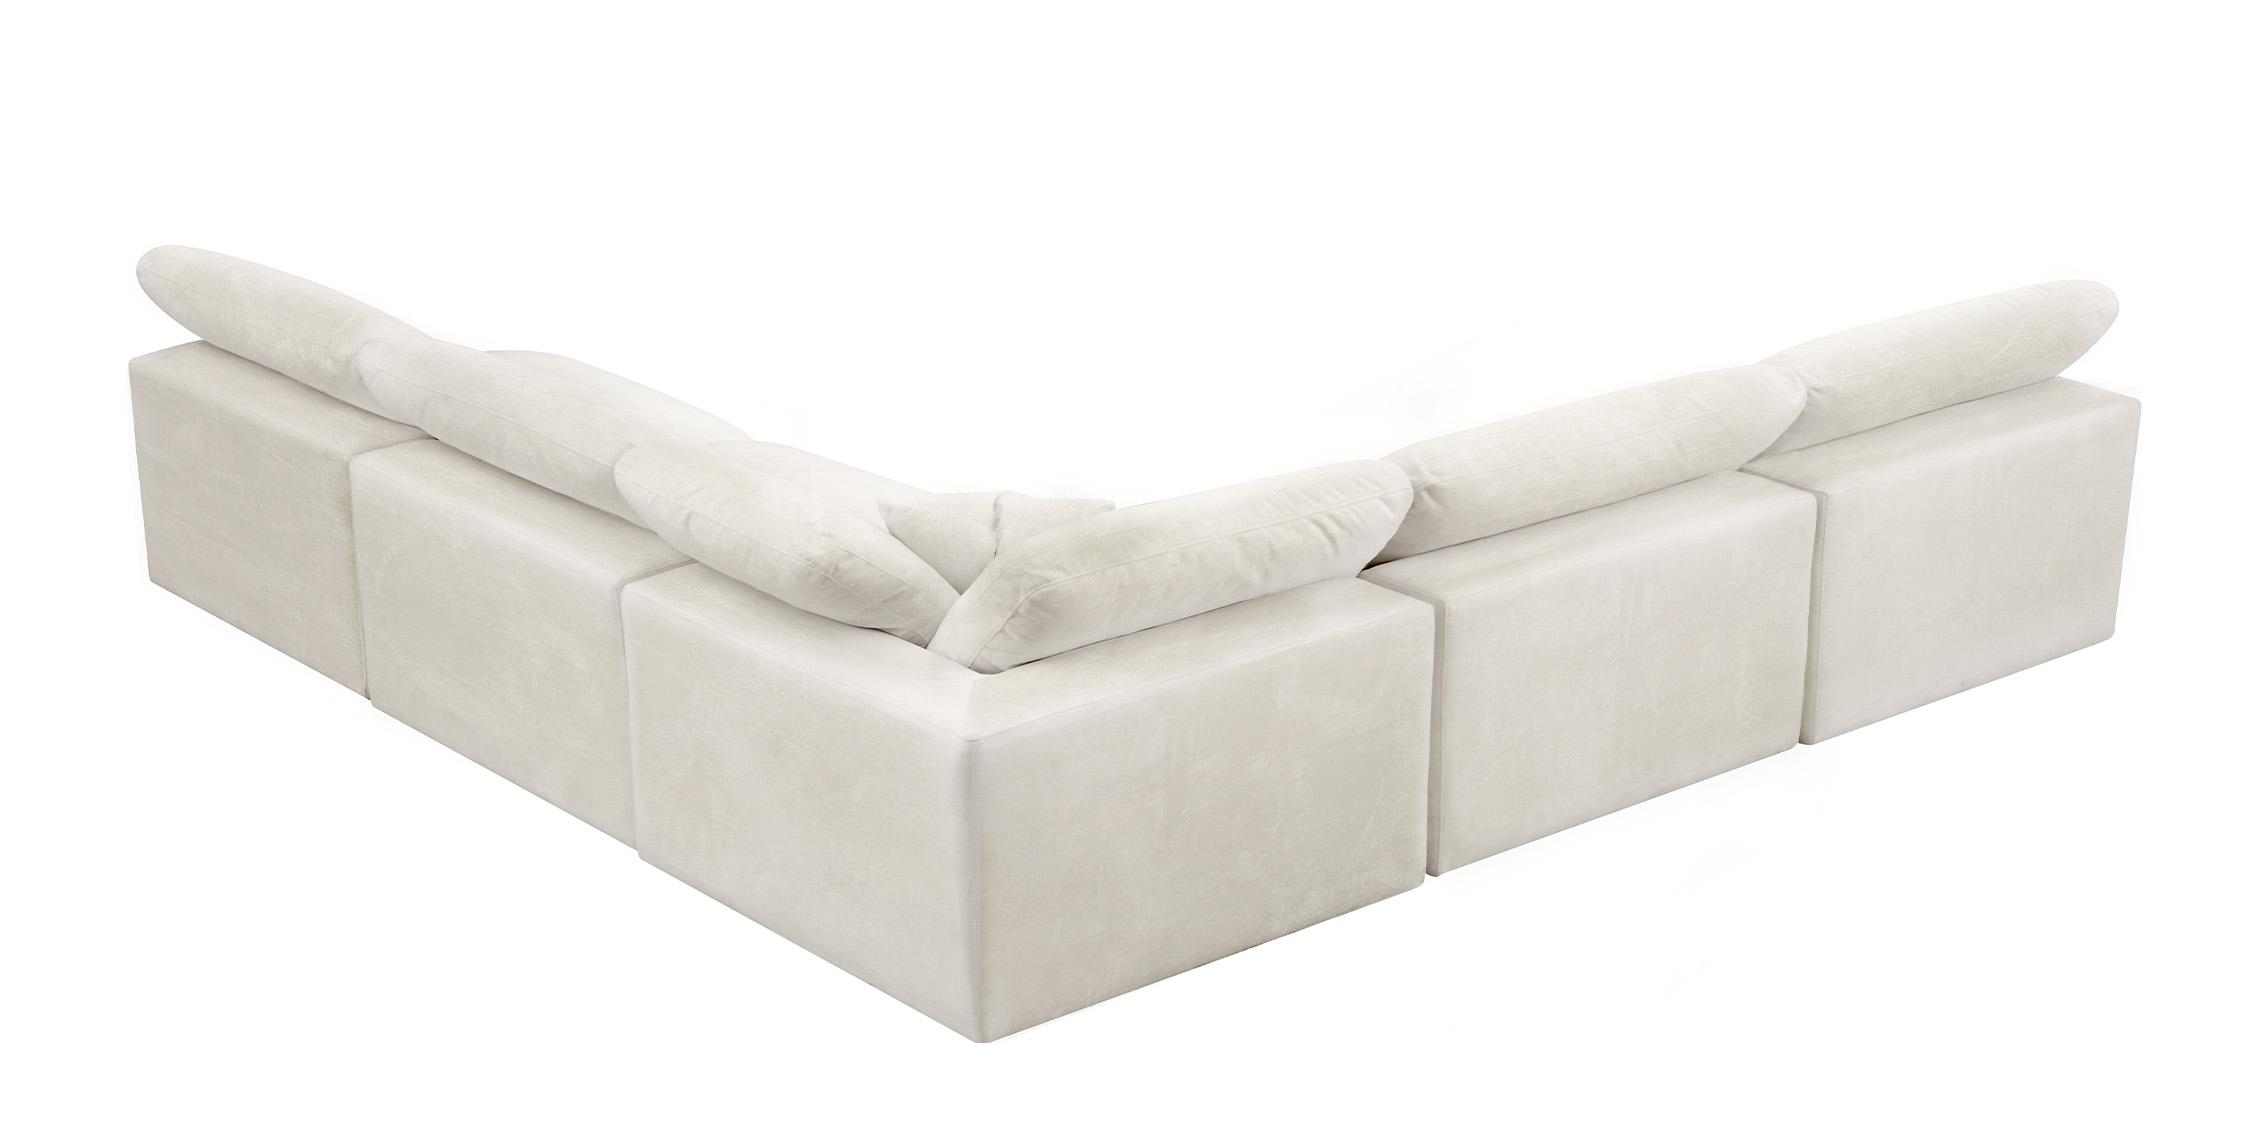 

    
Meridian Furniture 634Cream-Sec5B Modular Sectional Cream 634Cream-Sec5B
